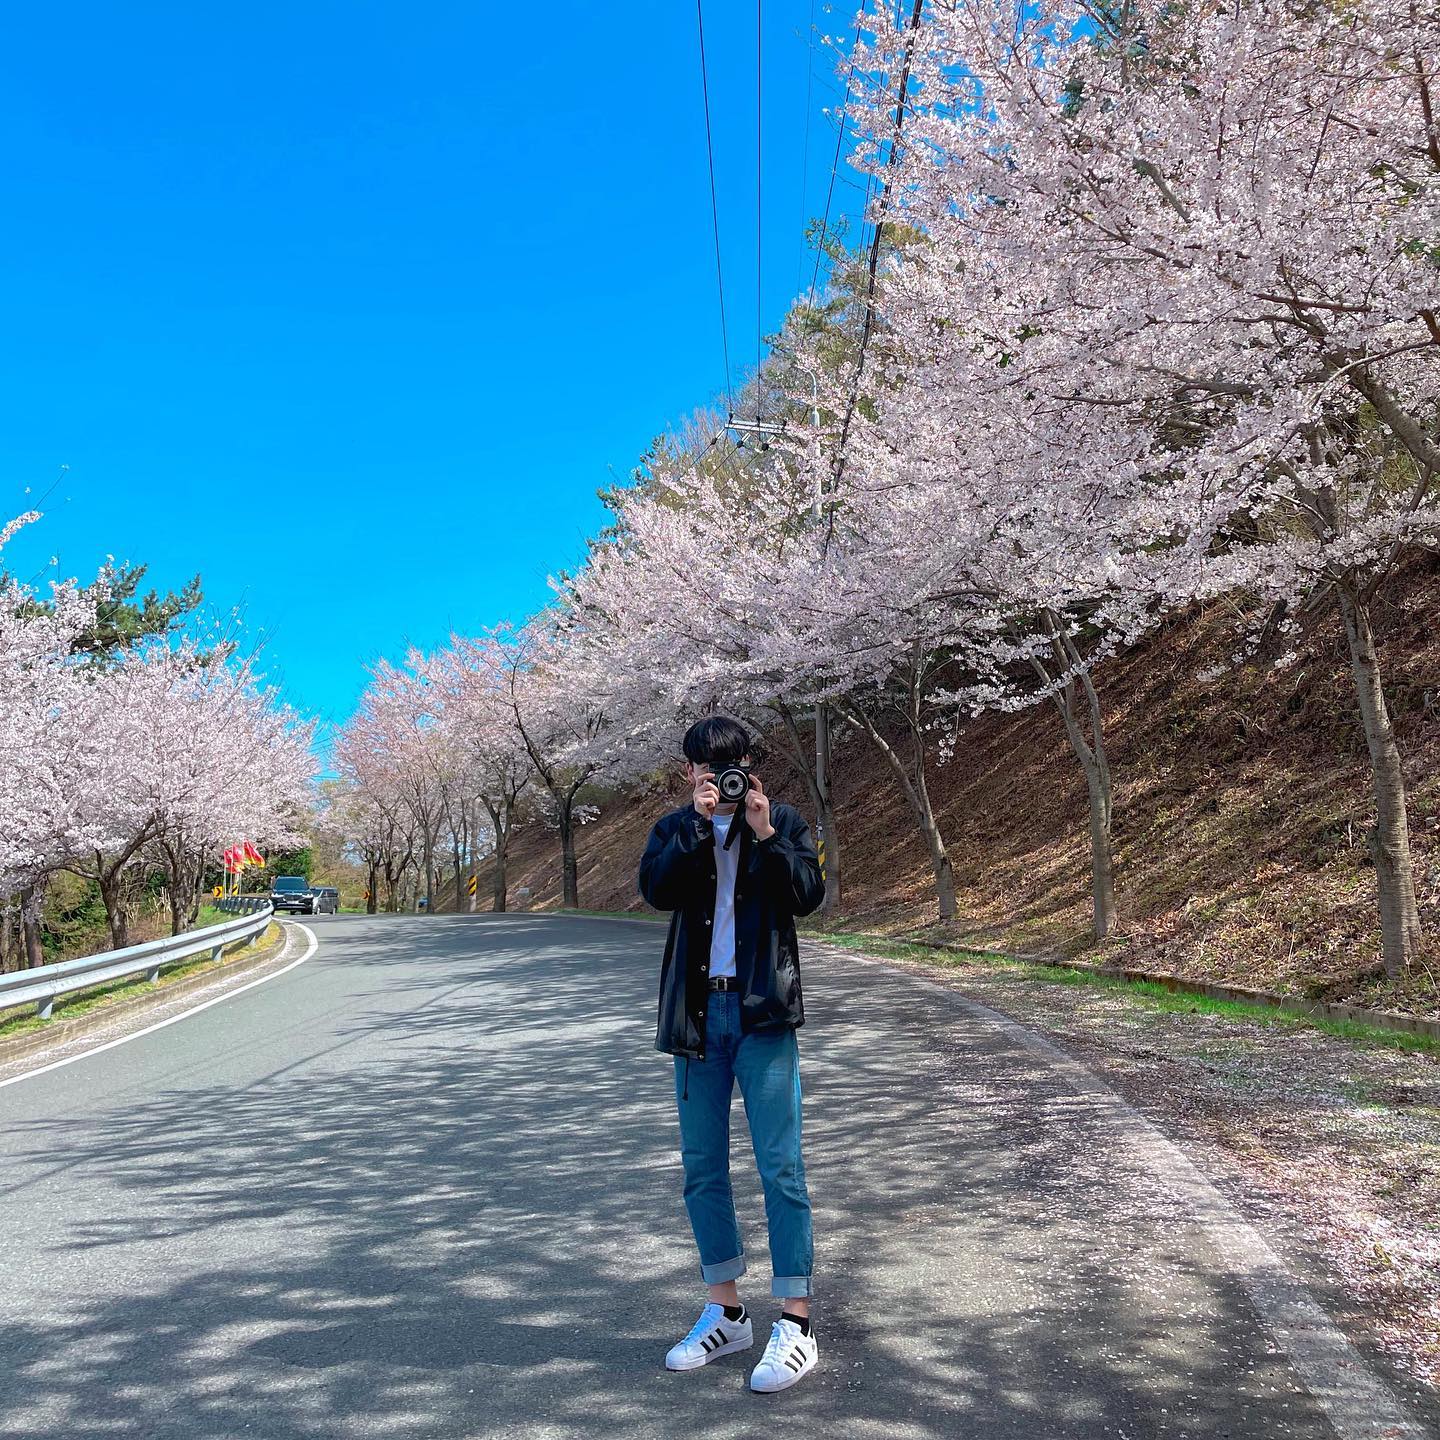 해안선을 따라 벚나무들이 줄지어 있어 한국의 아름다운 길로 선정되었다. 